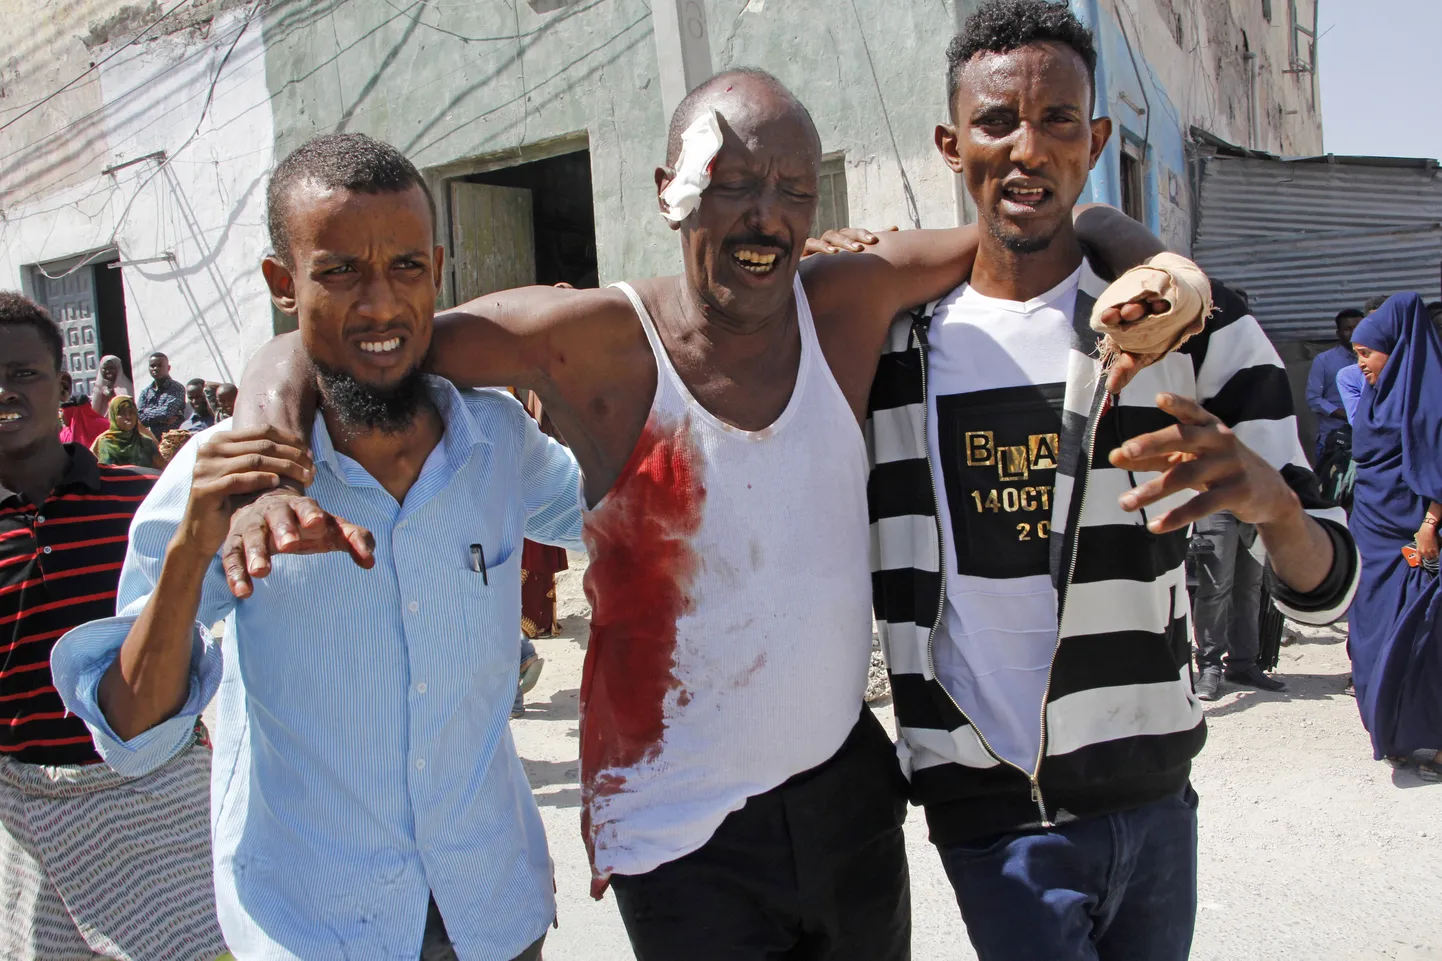 Somaalia pealinnas Muqdishos täna toimunud kaksikplahvatuses kannatada saanud mees sündmuskohal.